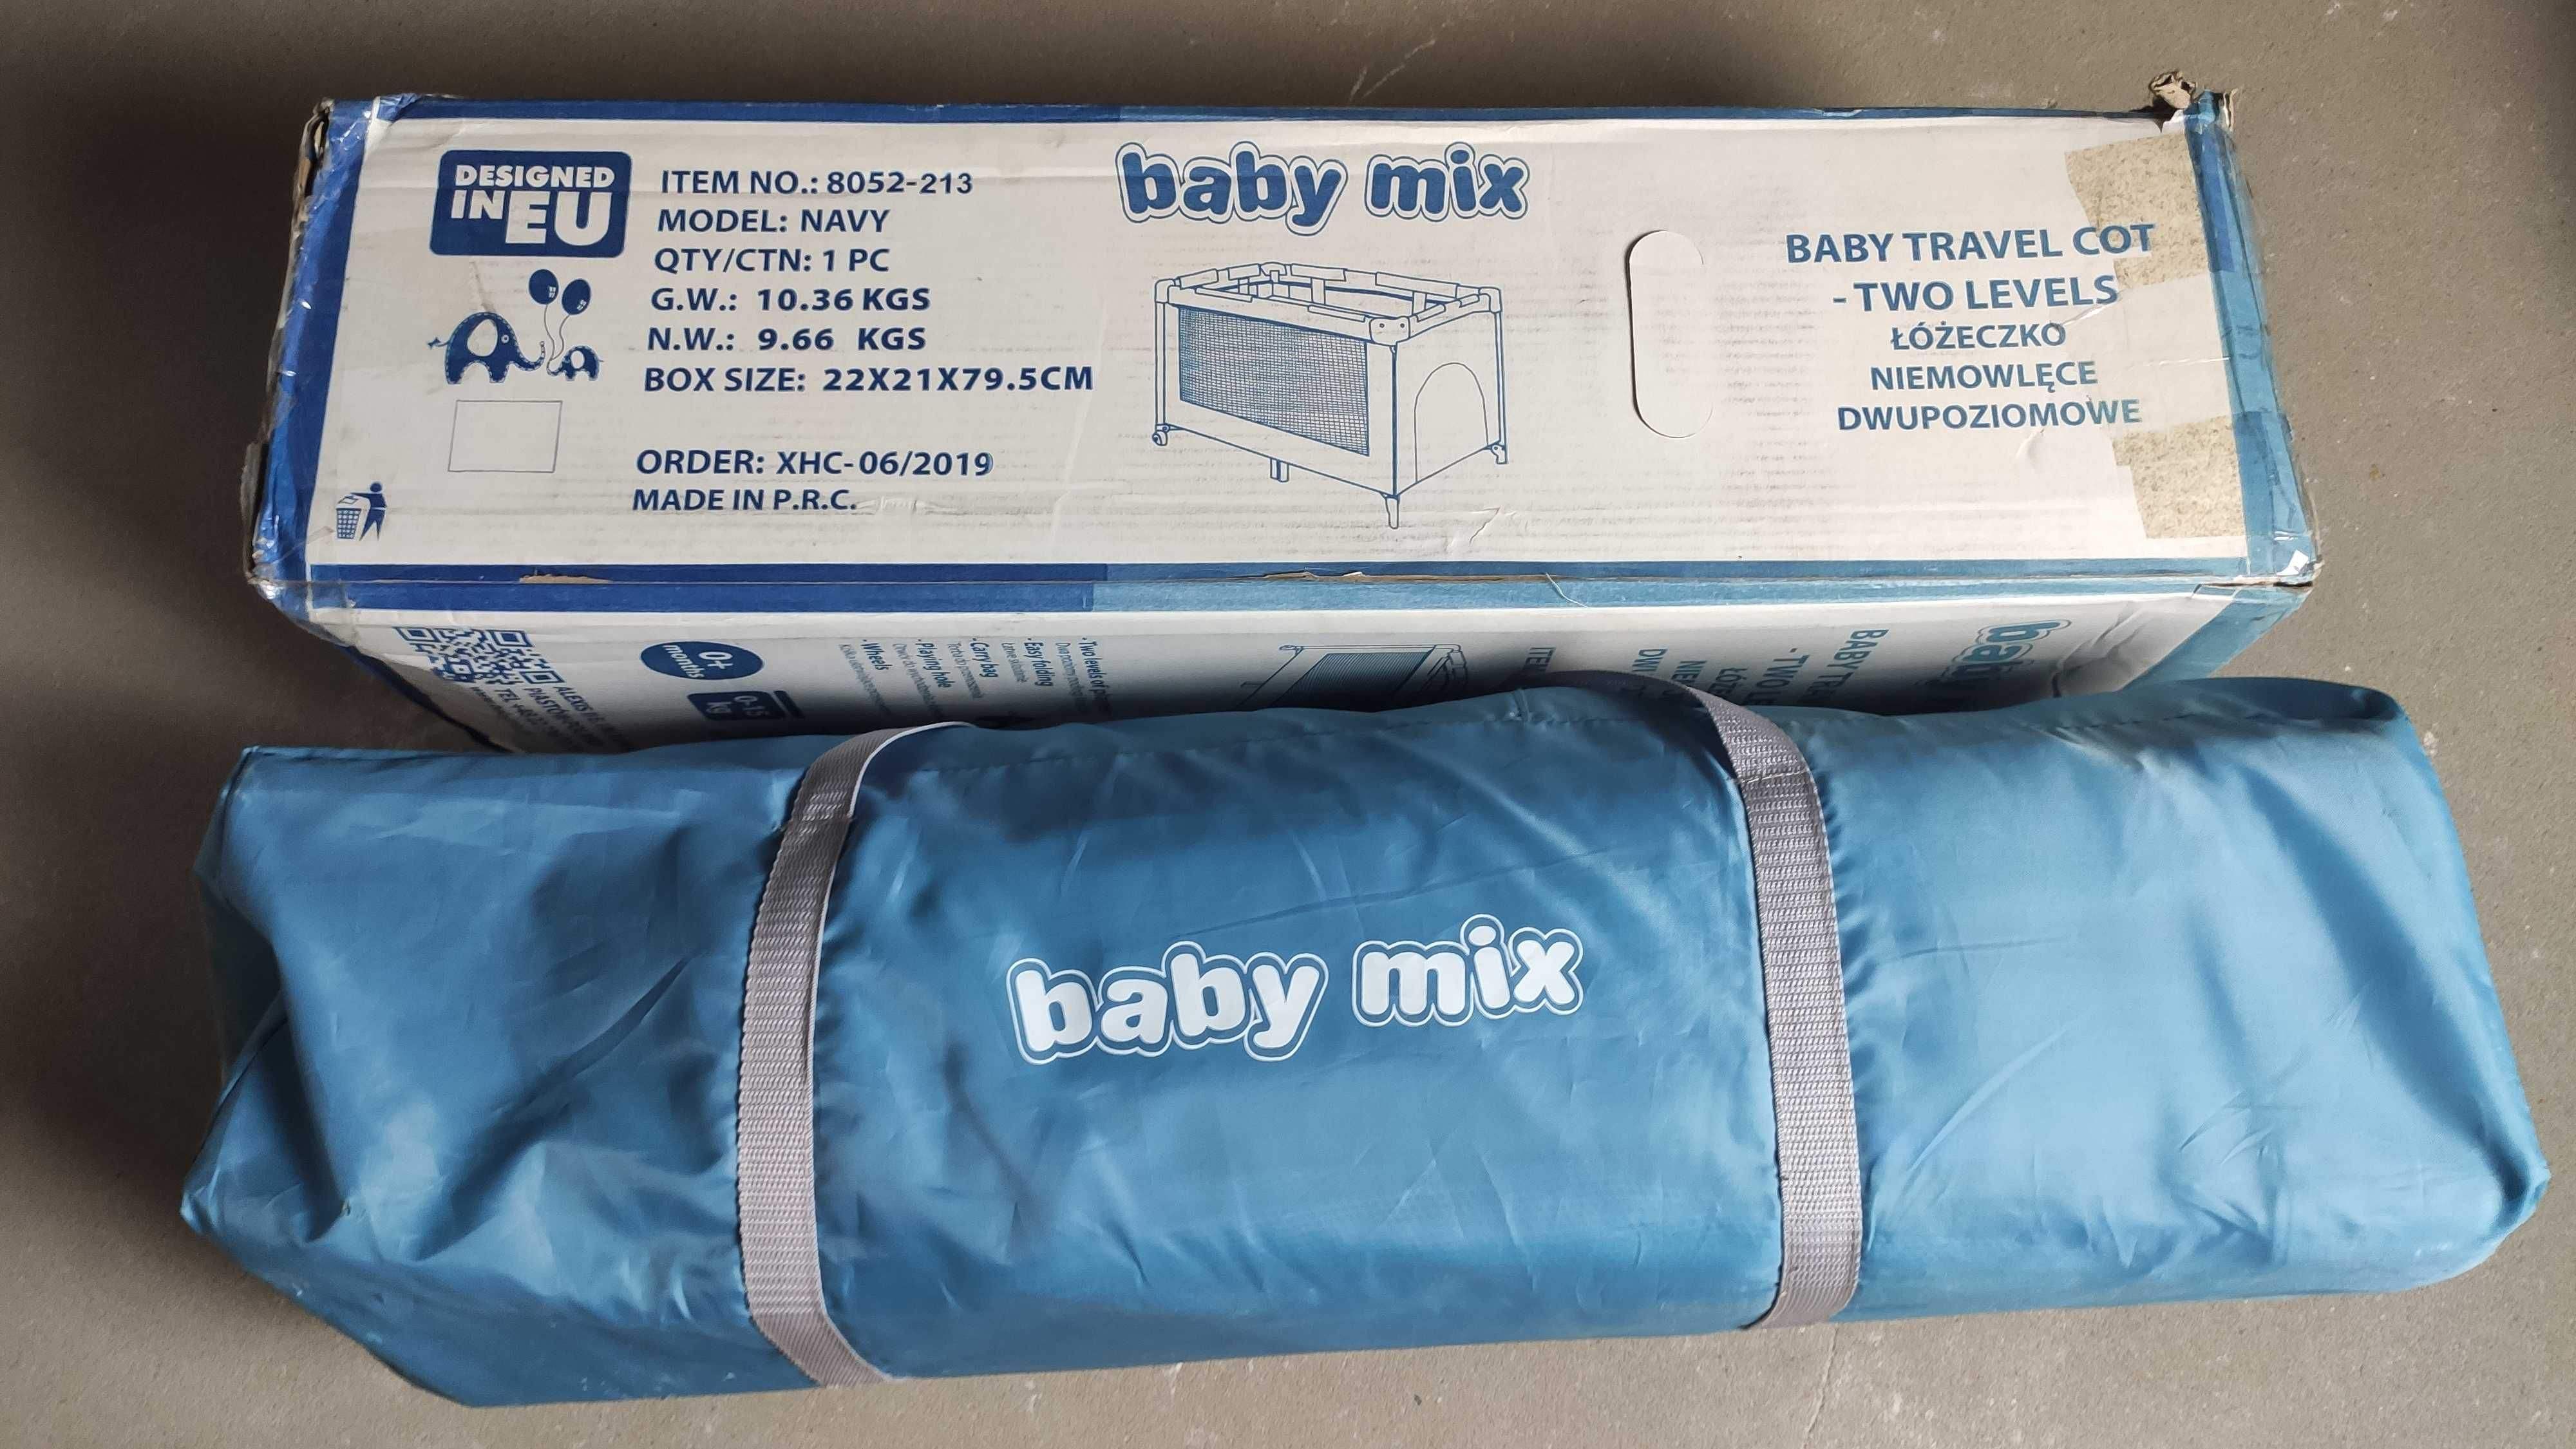 Łóżeczko turystyczne "Baby Mix 8052 - 213"